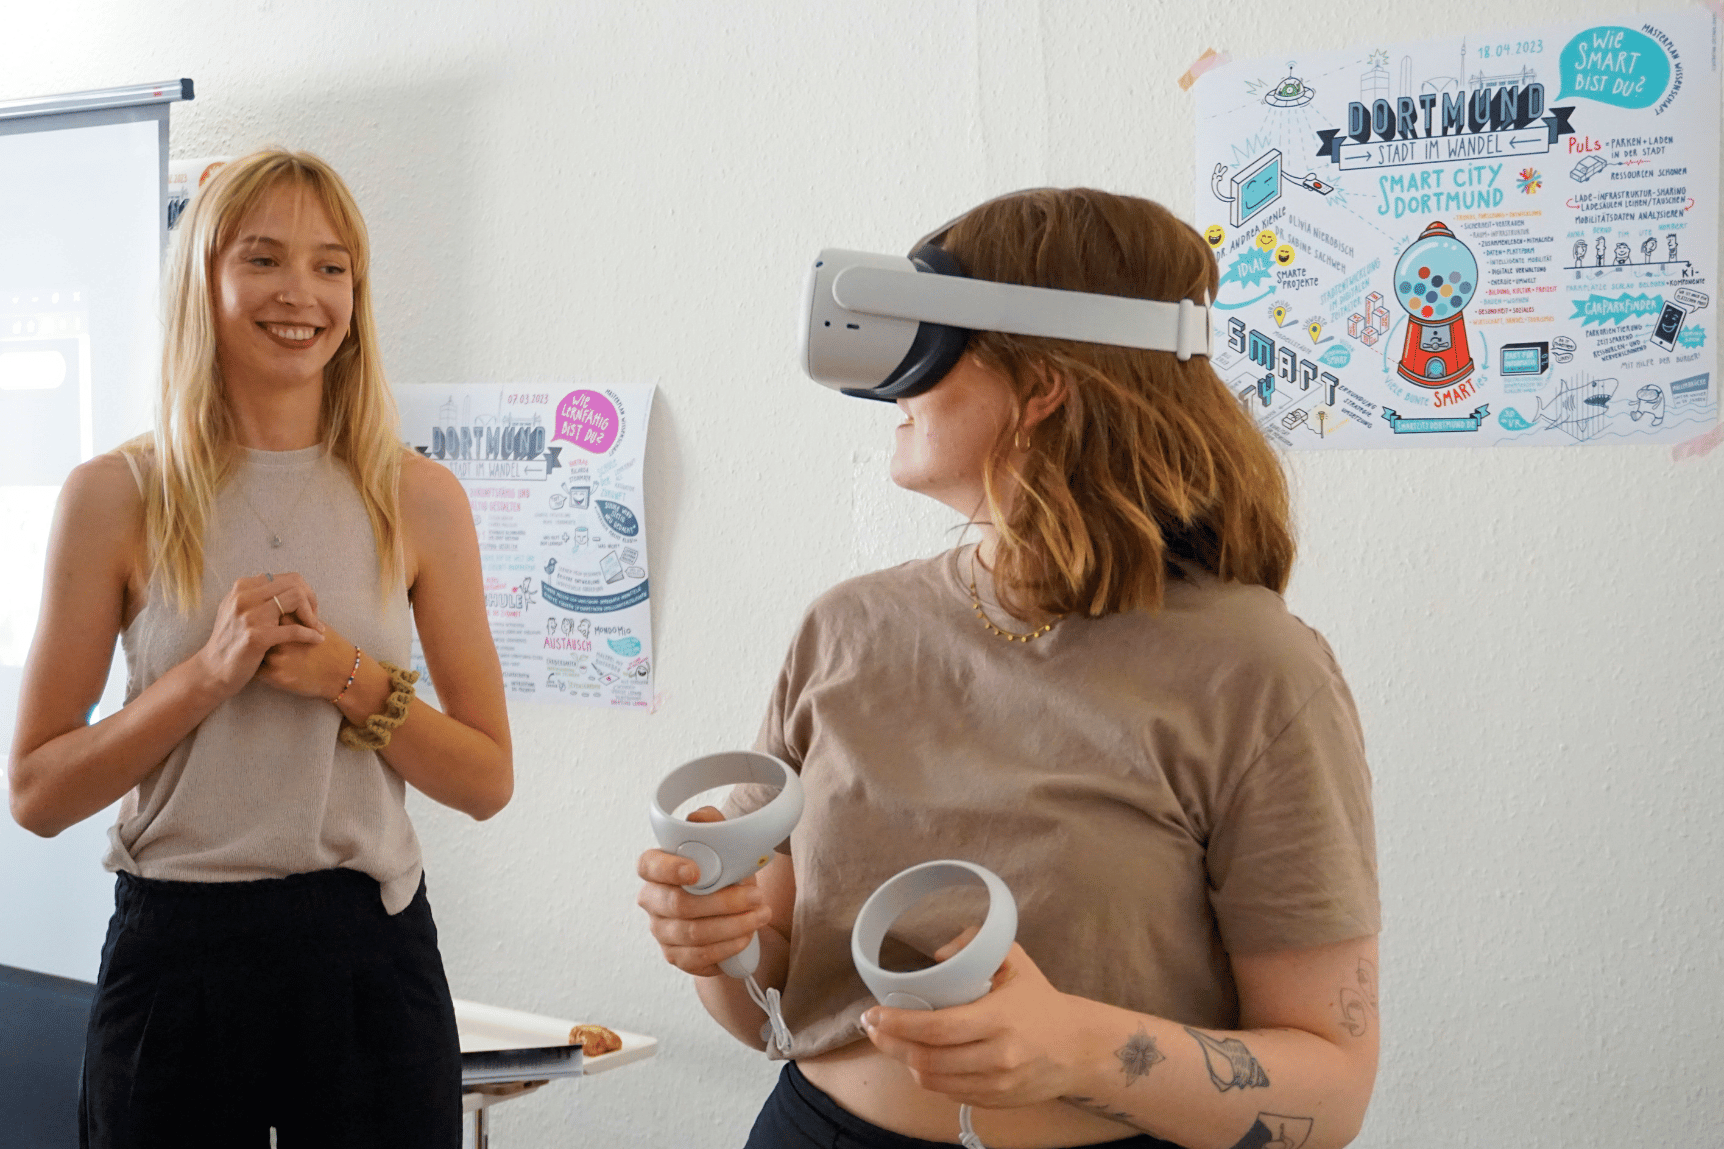 Zwei junge Frauen, die, die rechts steht, trägt eine VR-Brille und hält zwei Controller in den Händen